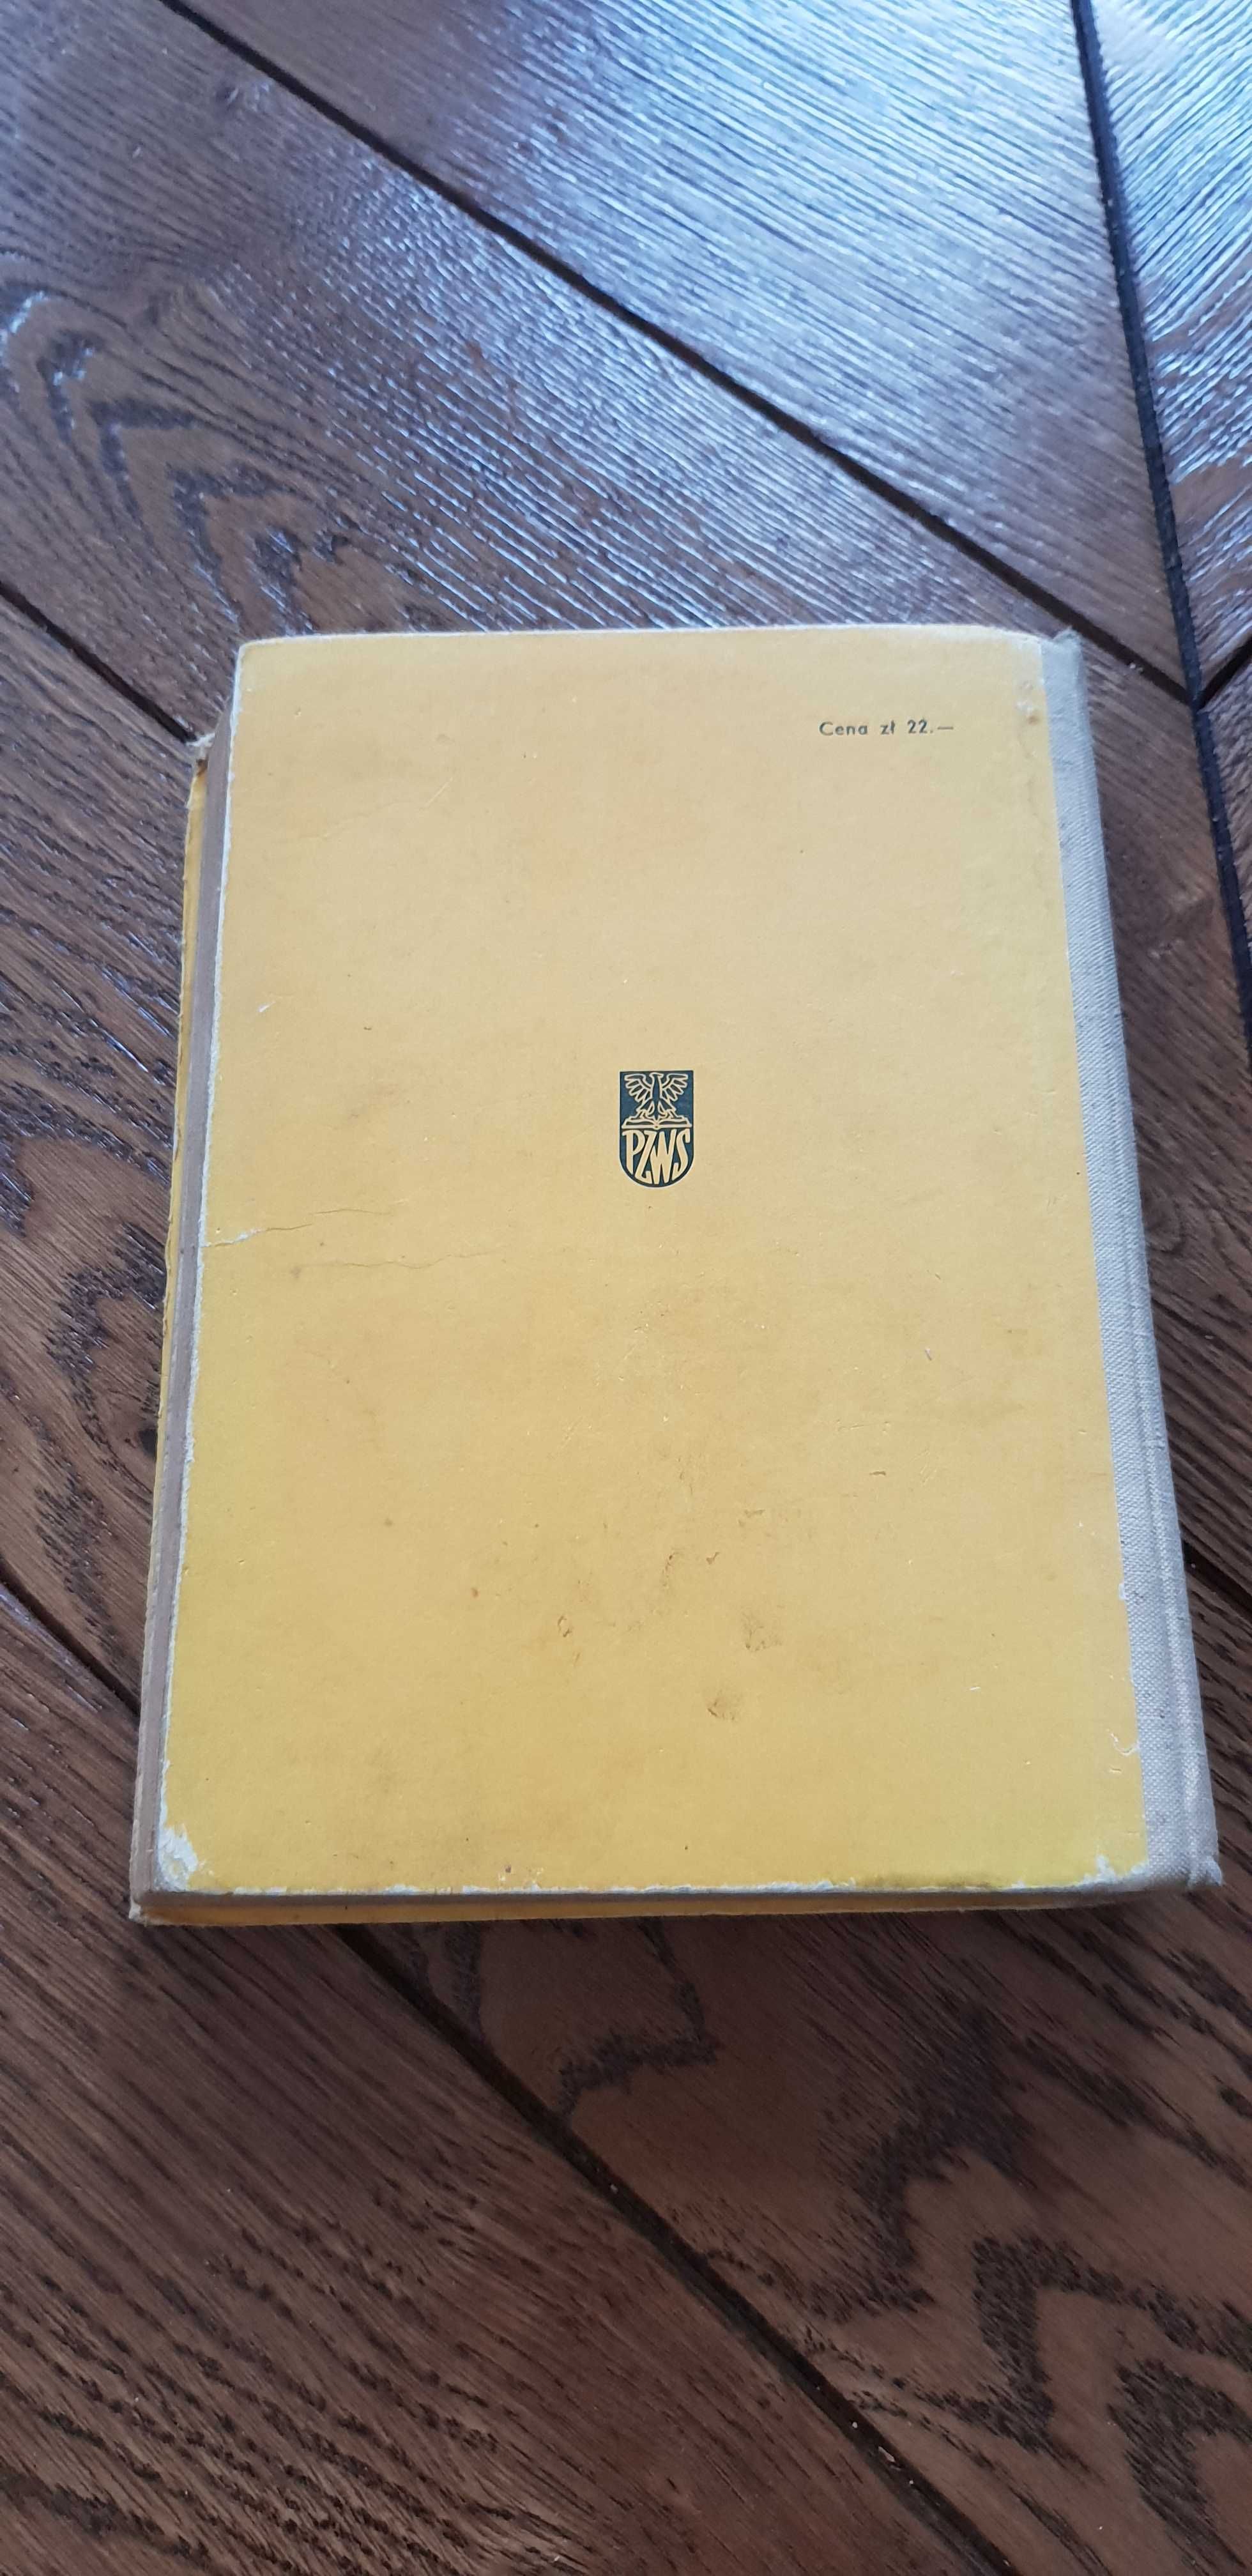 Książka rok 1969 "Historia" Jerzy Dowiat - podręcznik do historii